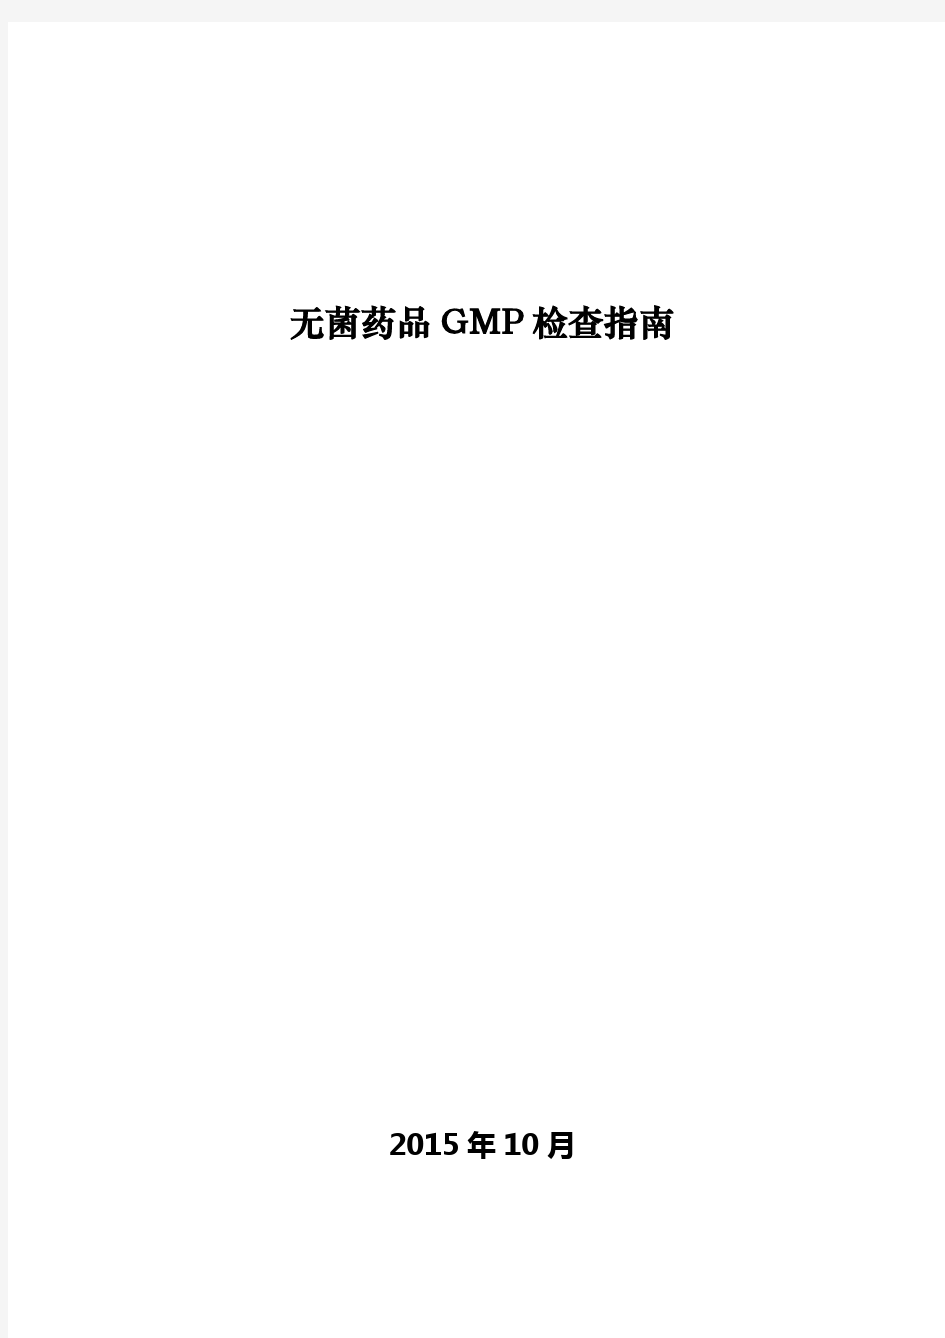 无菌药品GMP检查指南 2015